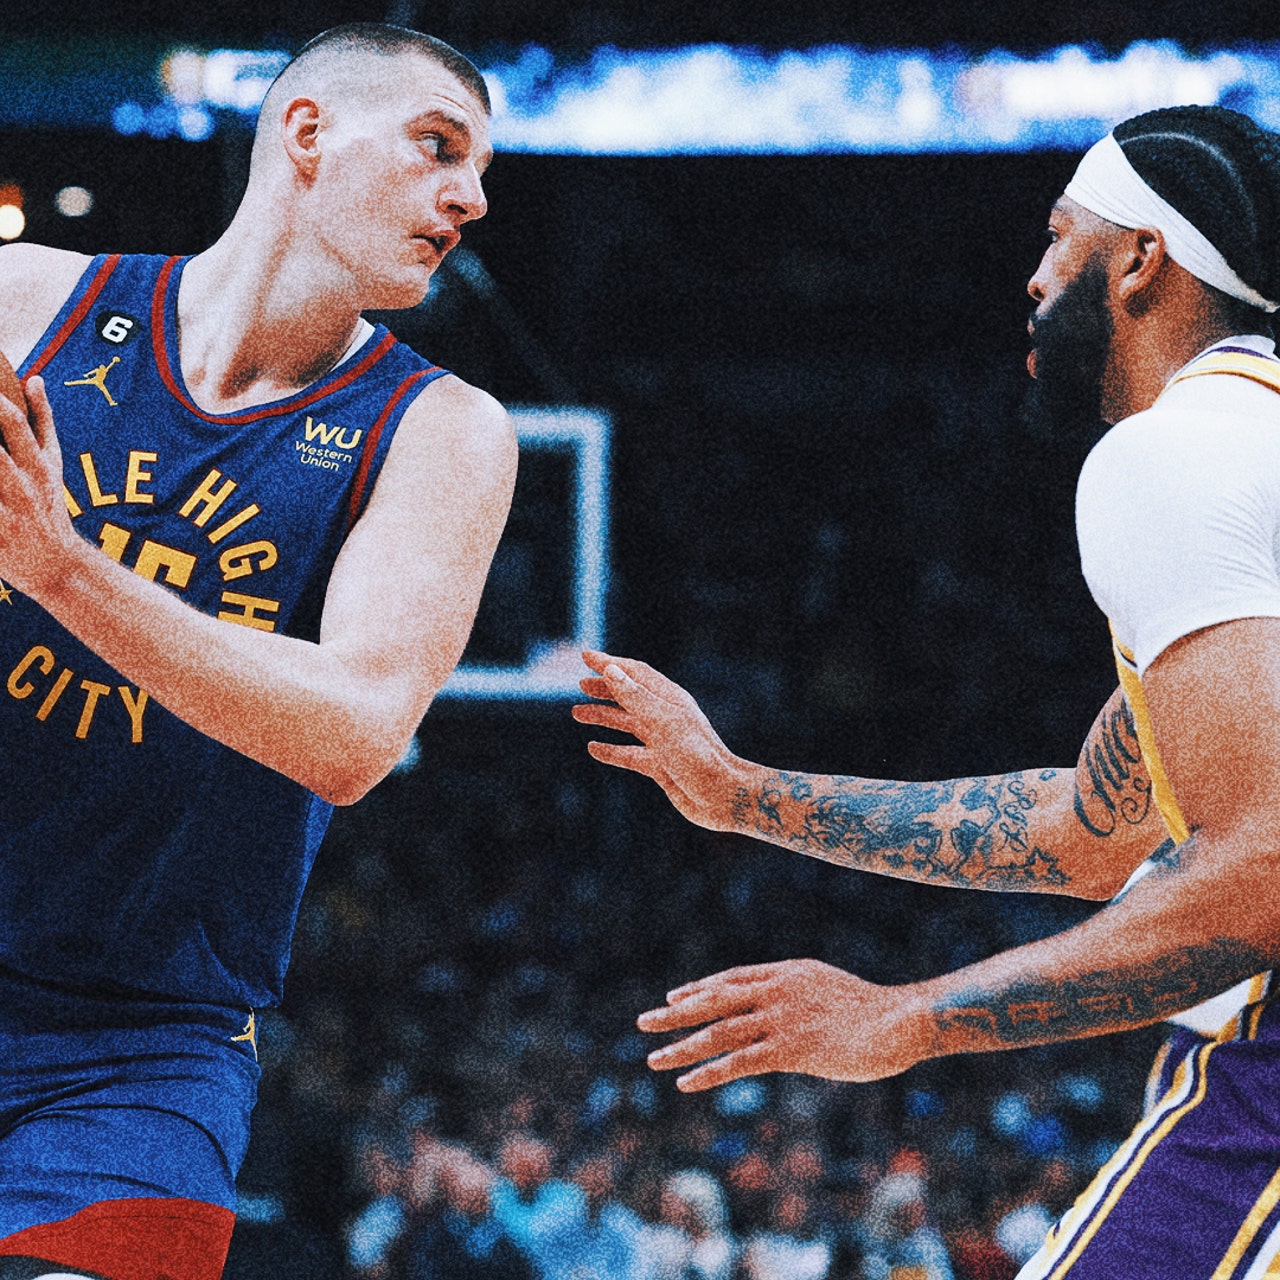 Nikola Jokic leads Nuggets past Lakers 132-126 in West opener